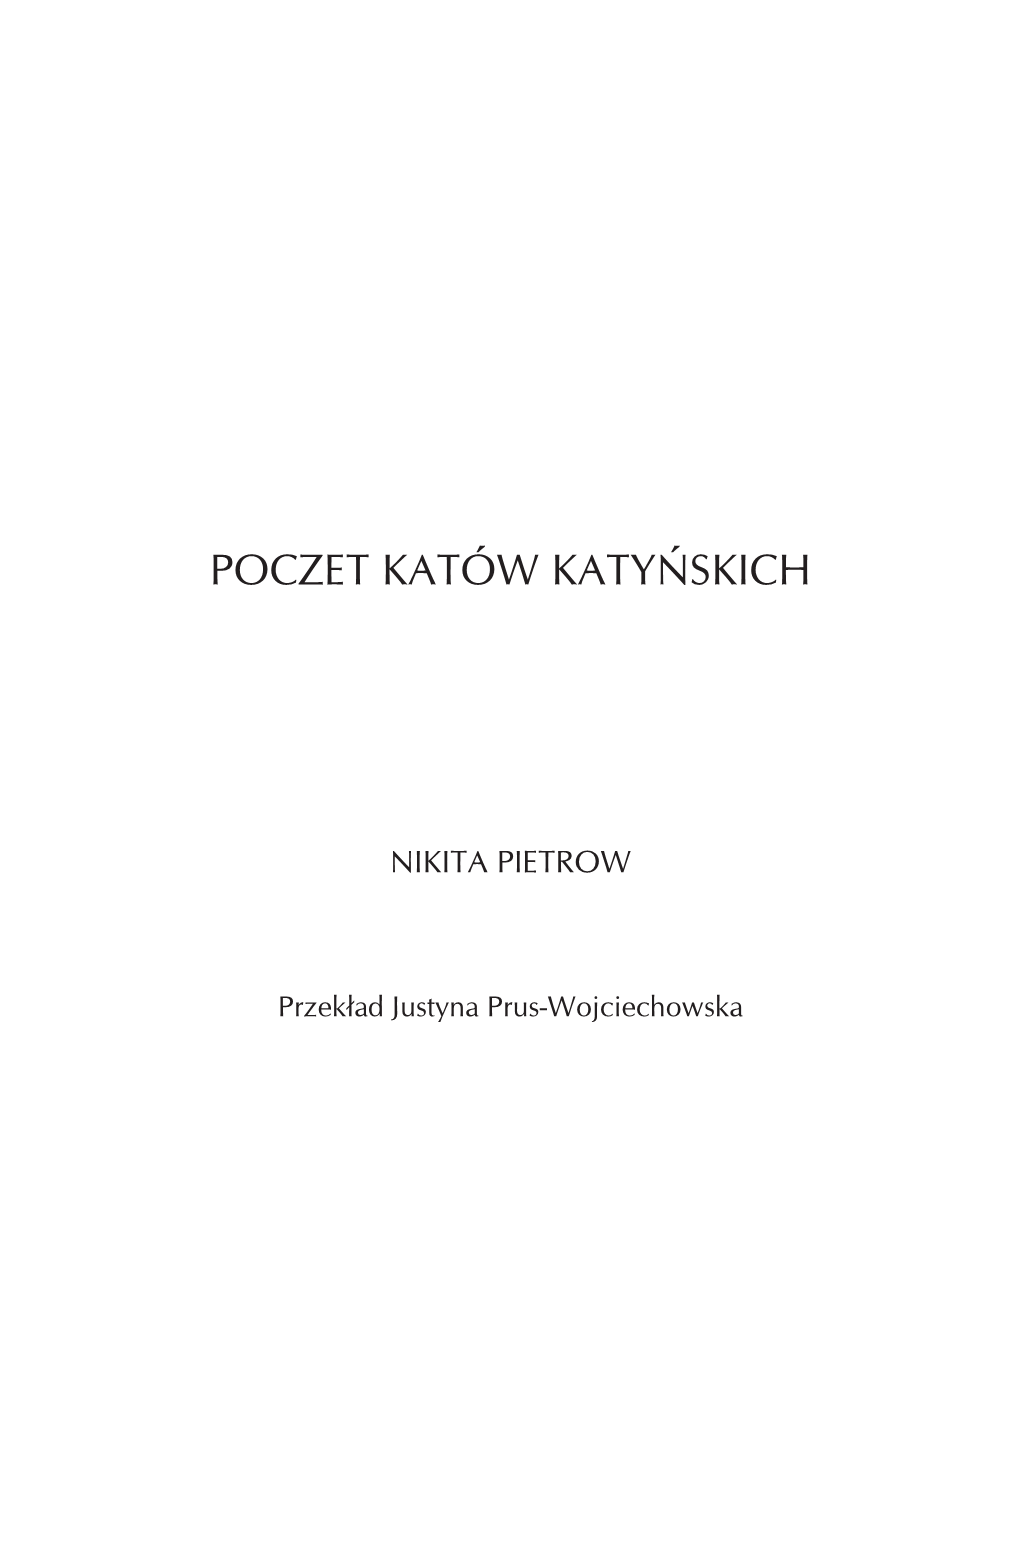 Poczet Katów Katyńskich